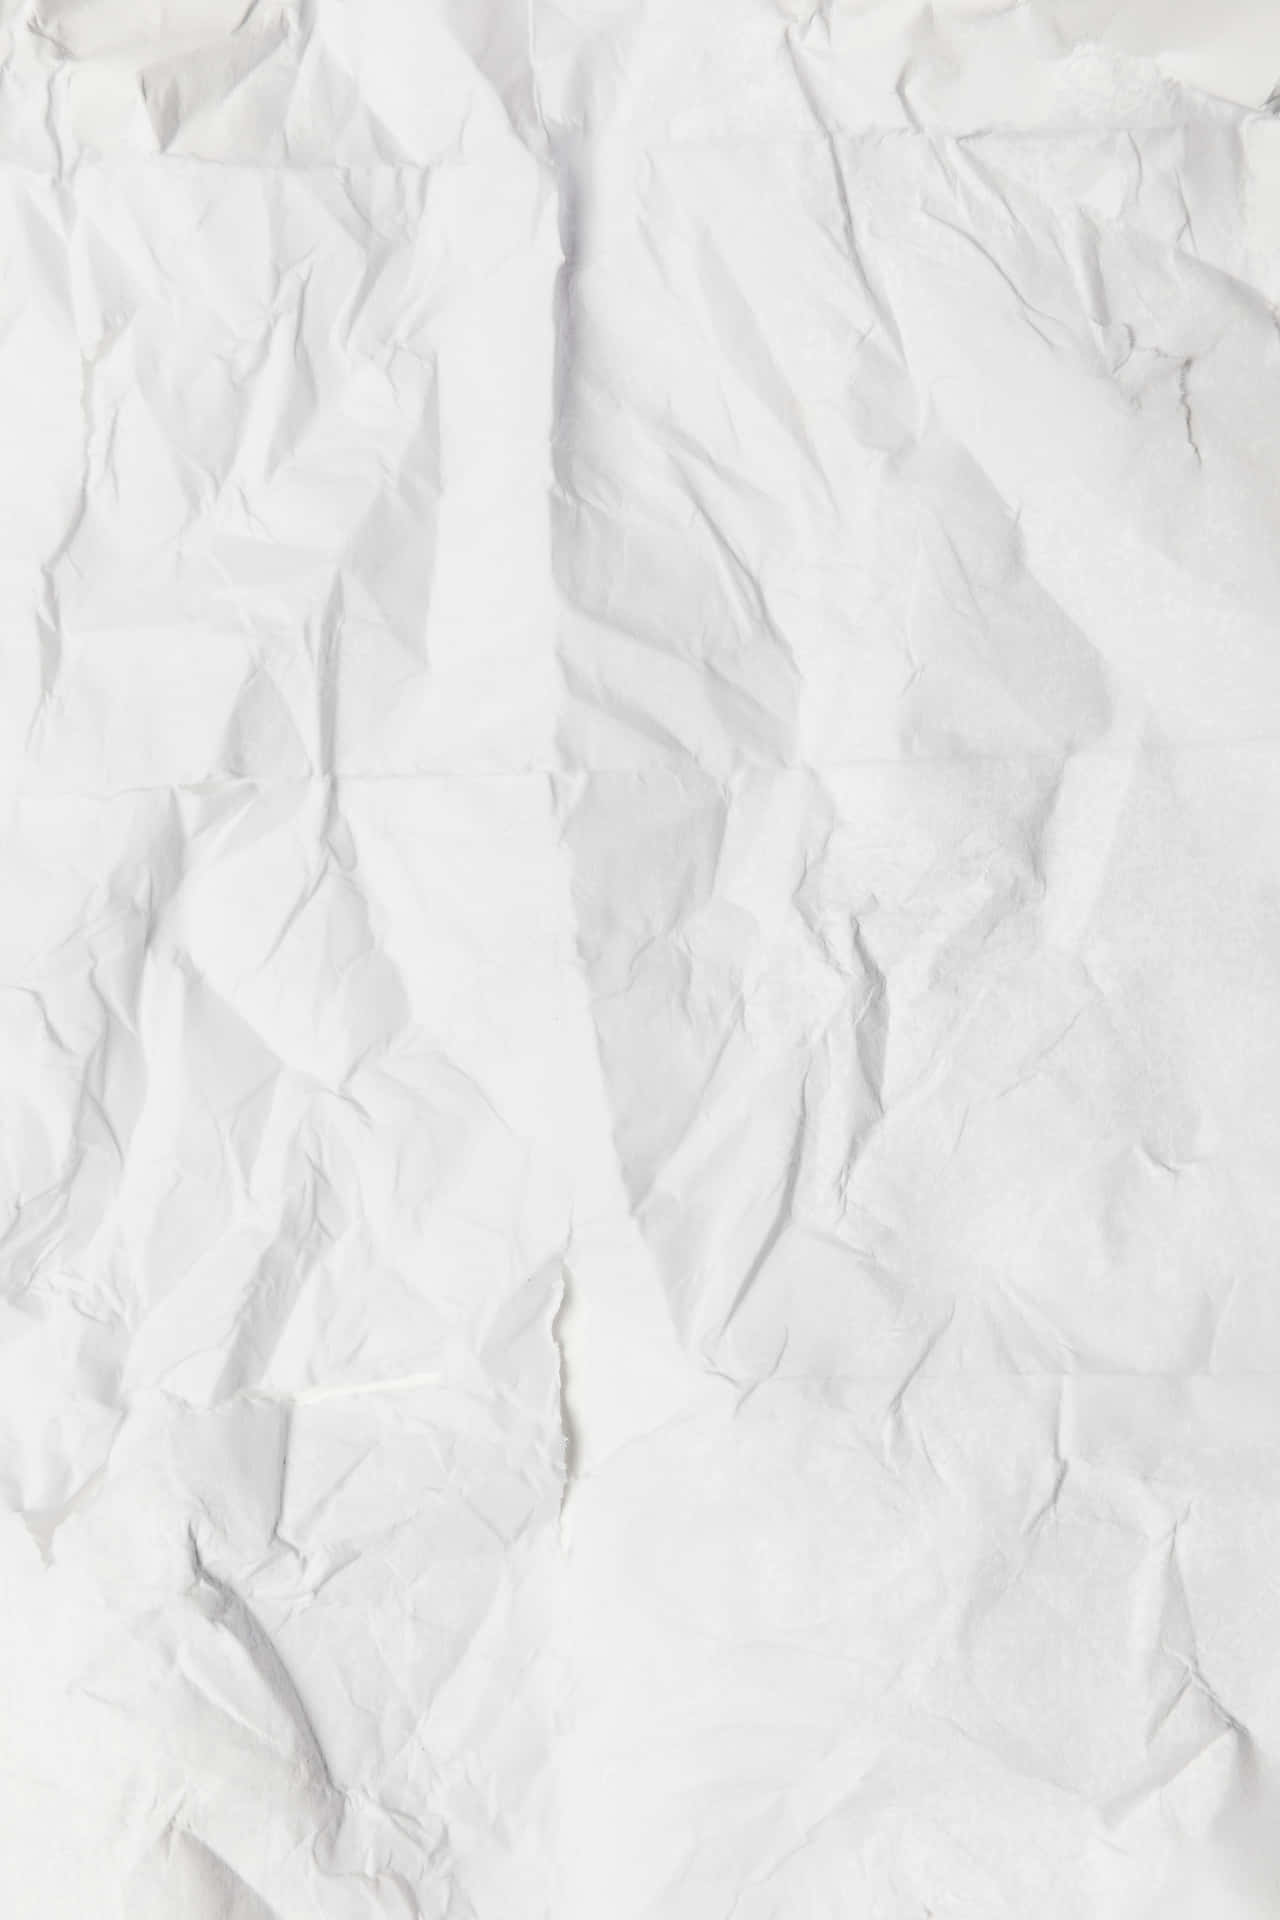 Crinkled White Paper Background Wallpaper